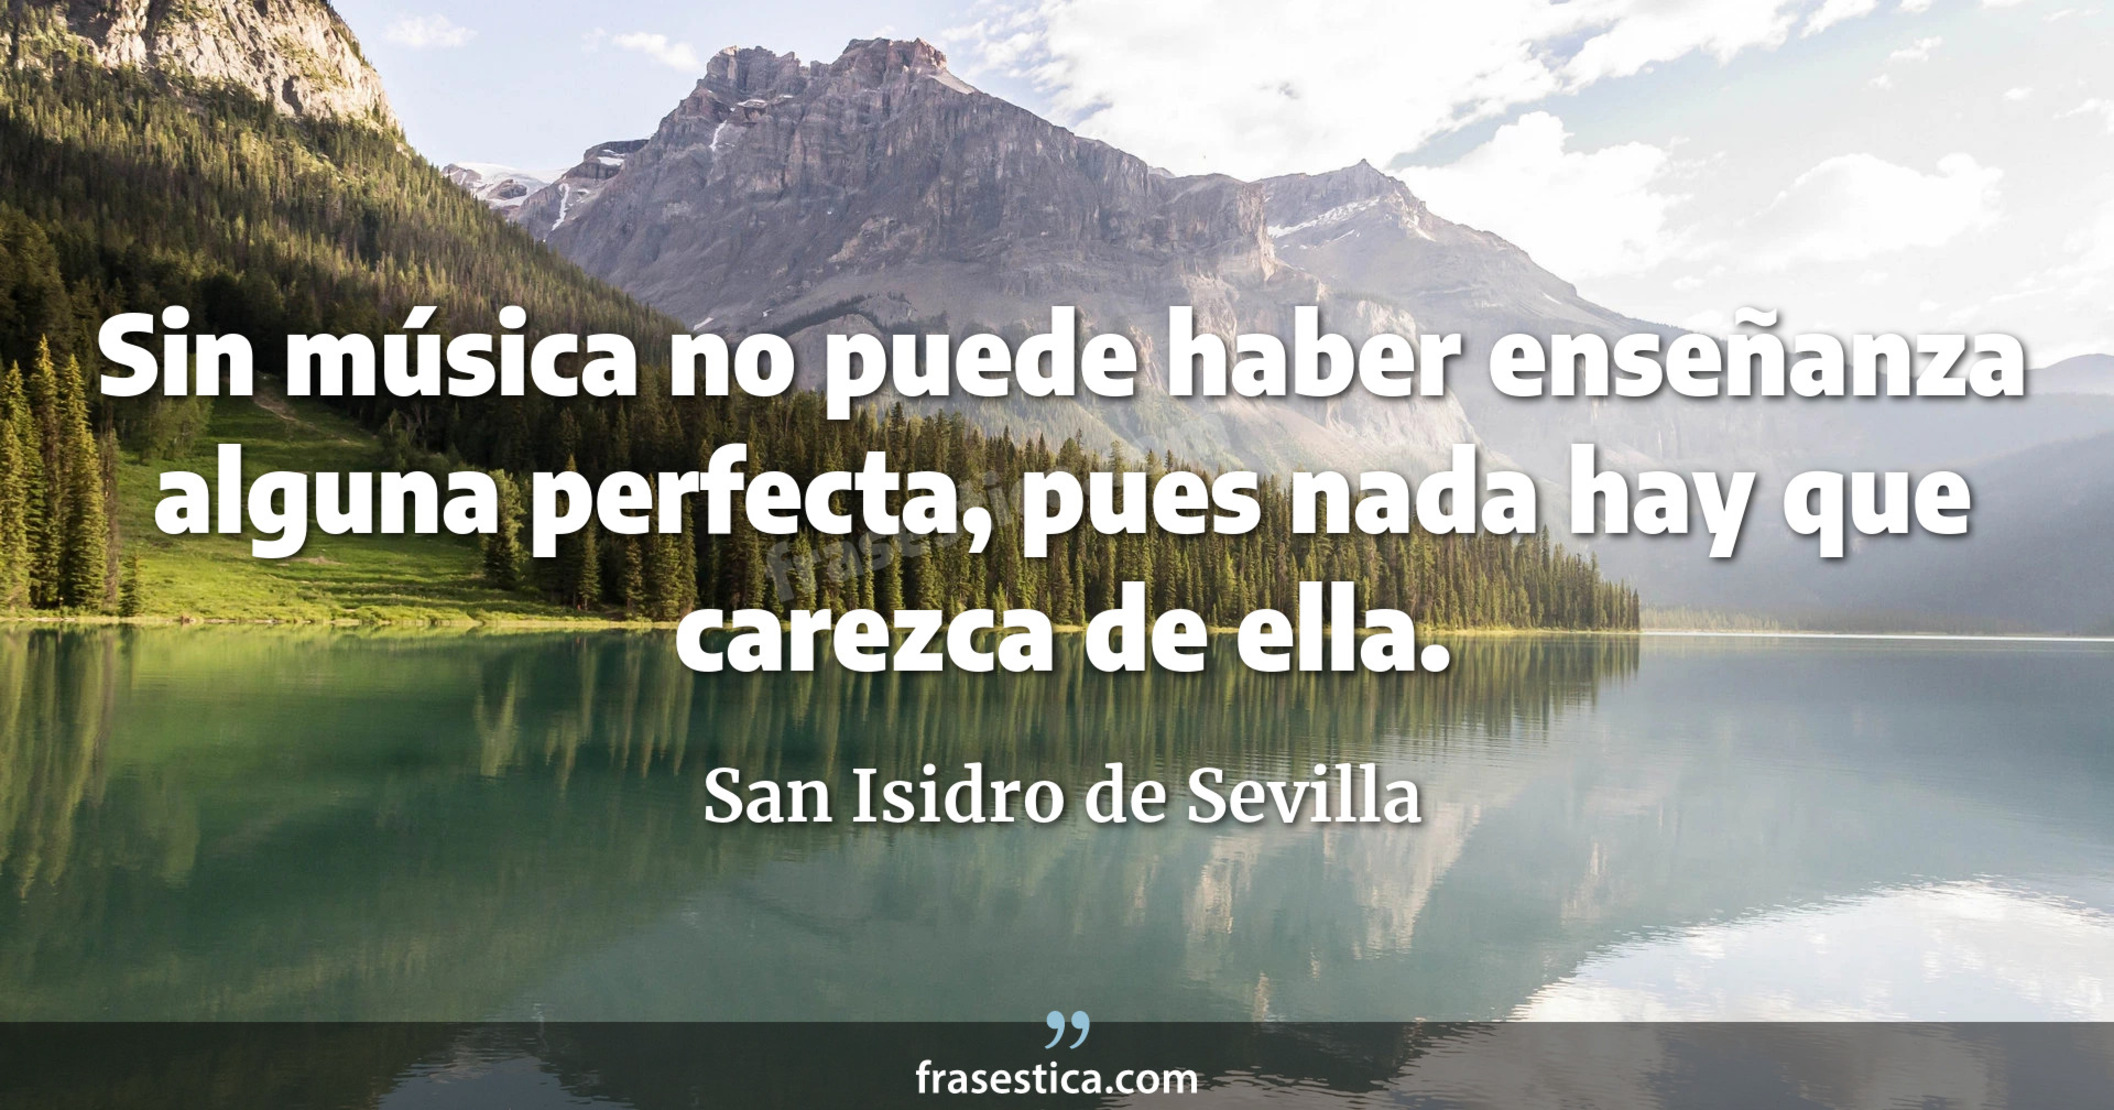 Sin música no puede haber enseñanza alguna perfecta, pues nada hay que carezca de ella. - San Isidro de Sevilla